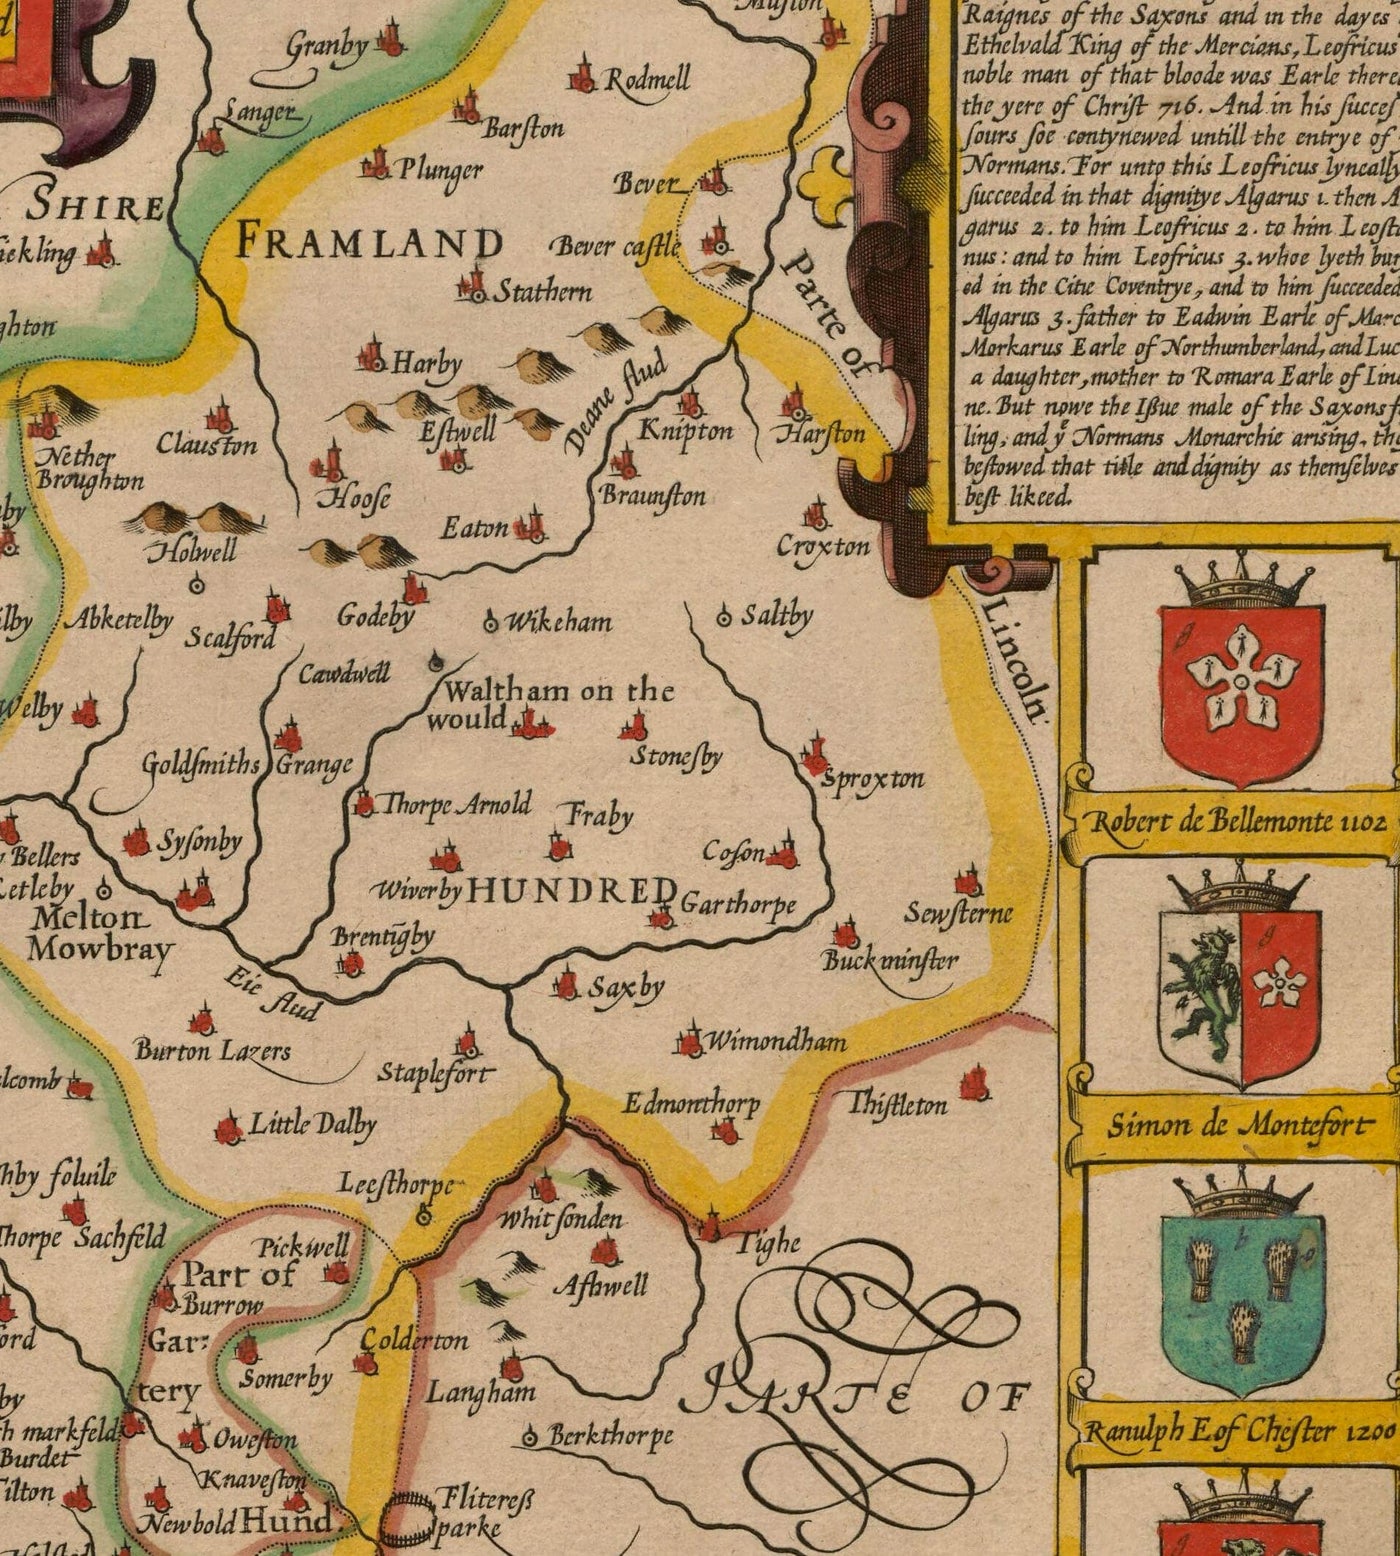 Mapa antiguo de Leicestershire en 1611 por John Speed ​​- Leicester, Loughborough, Hinckley, Wigston